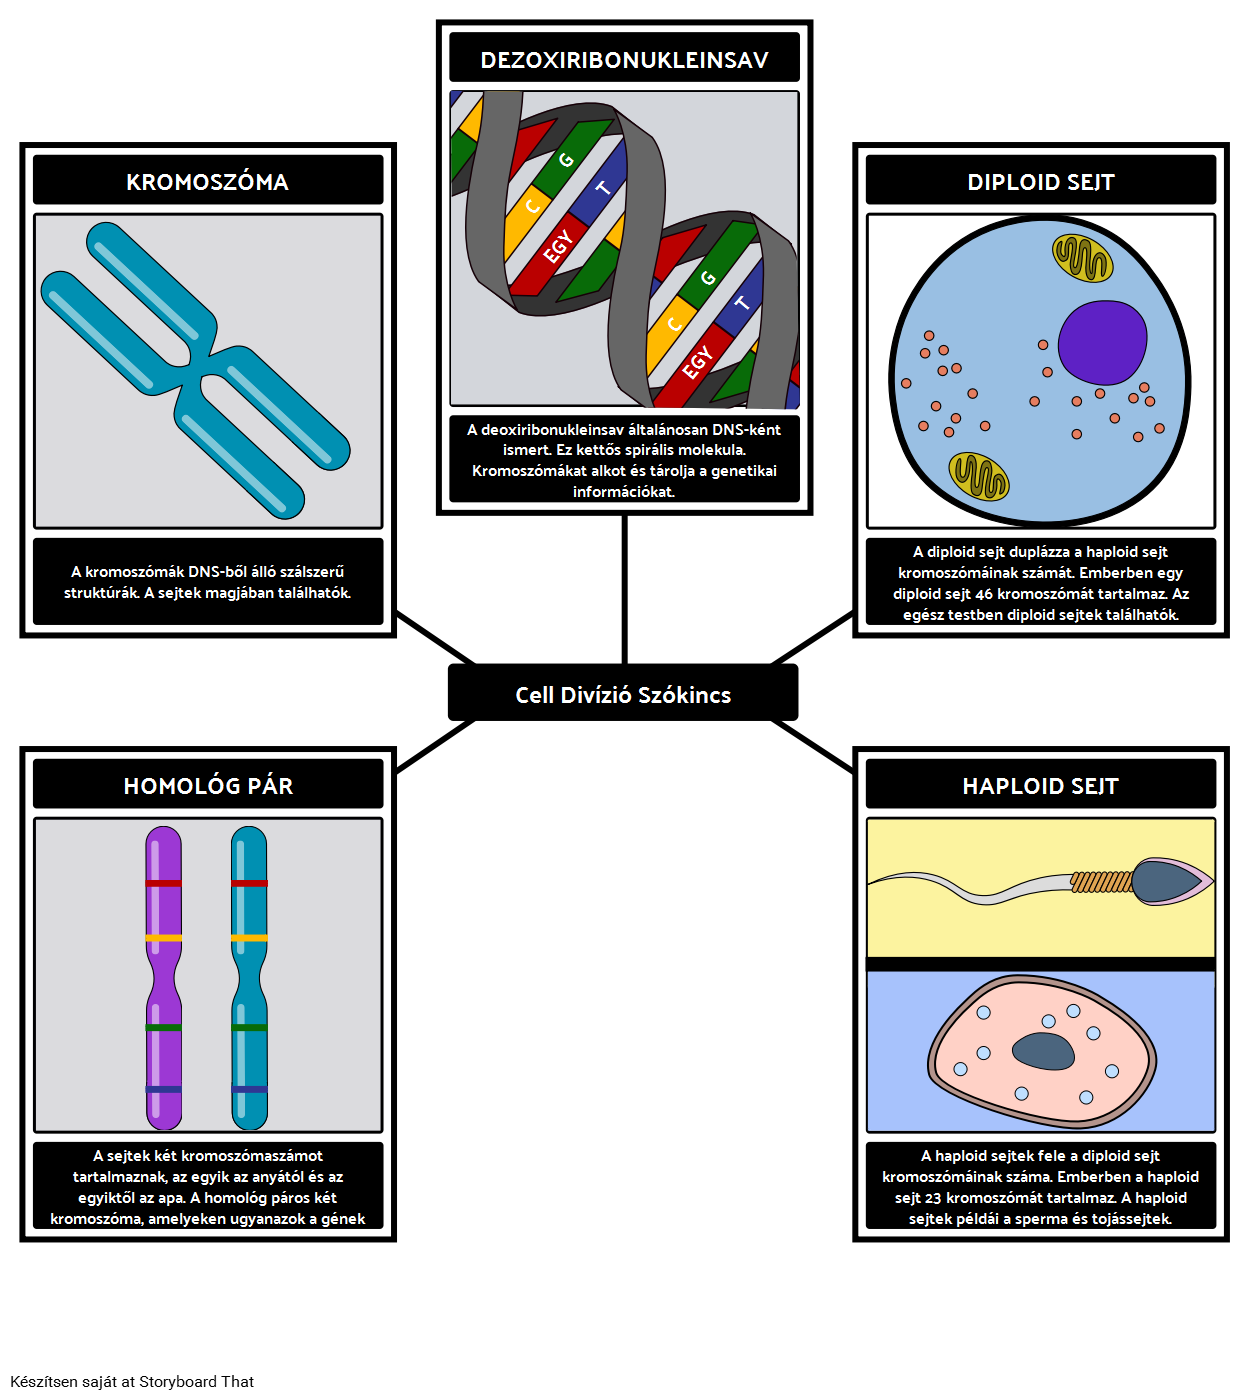 Cell Divízió Szókincs